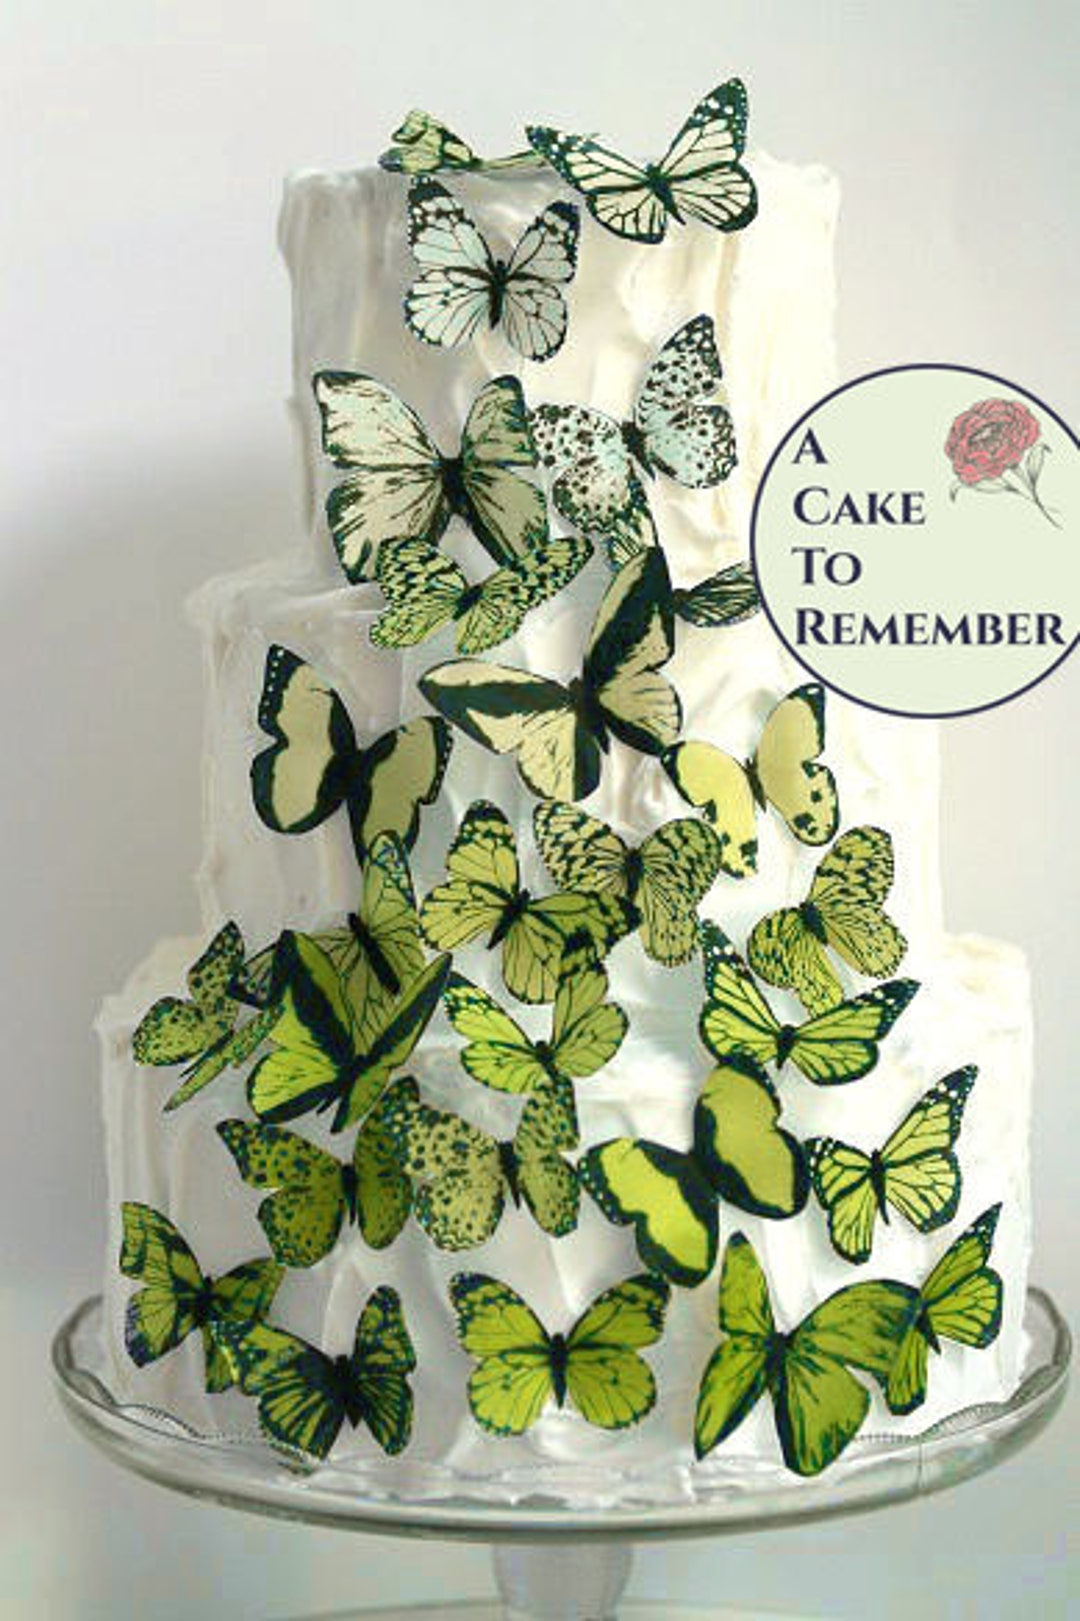 Juego de decoraciones para tartas de colores morados, juego de 48 mariposas  de papel de oblea